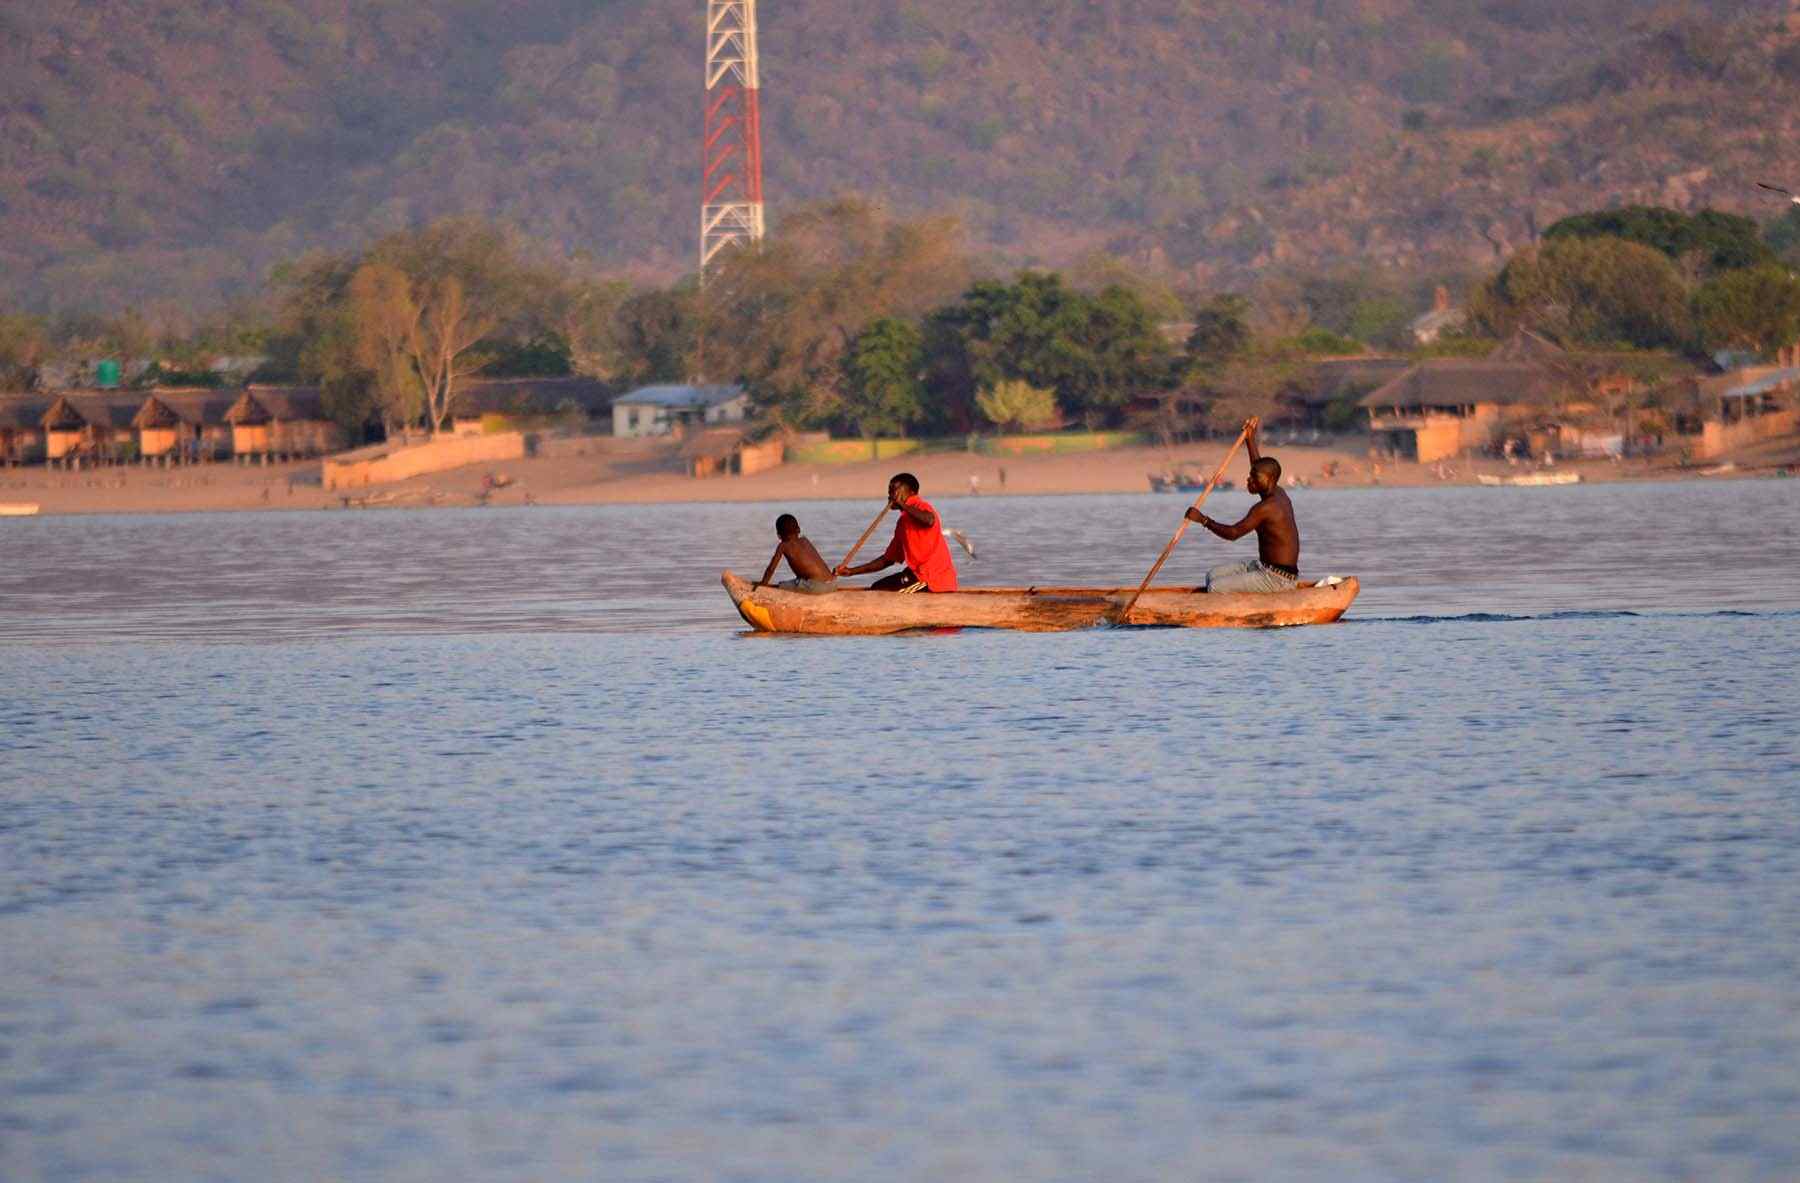 Lake Malawi in danger